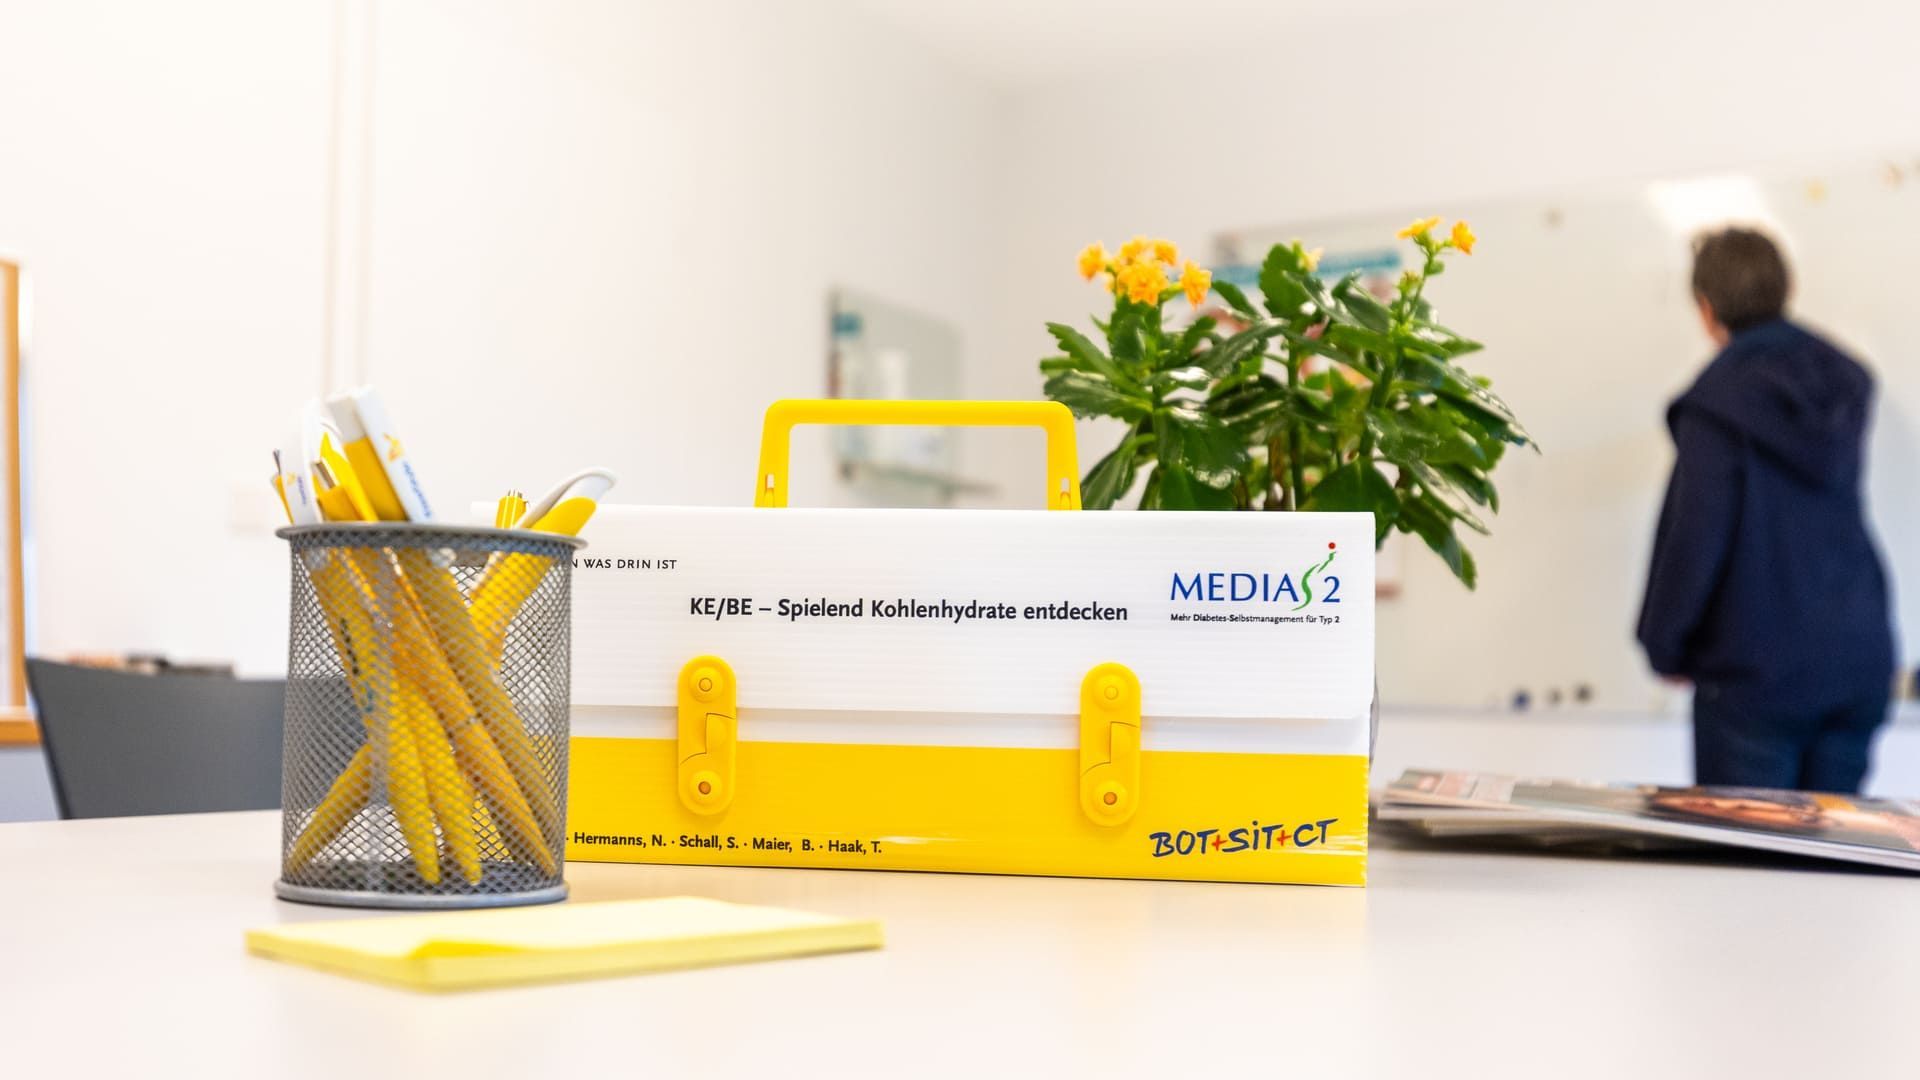 Ein gelber Werkzeugkasten steht neben einem Bleistifthalter auf einem Tisch.